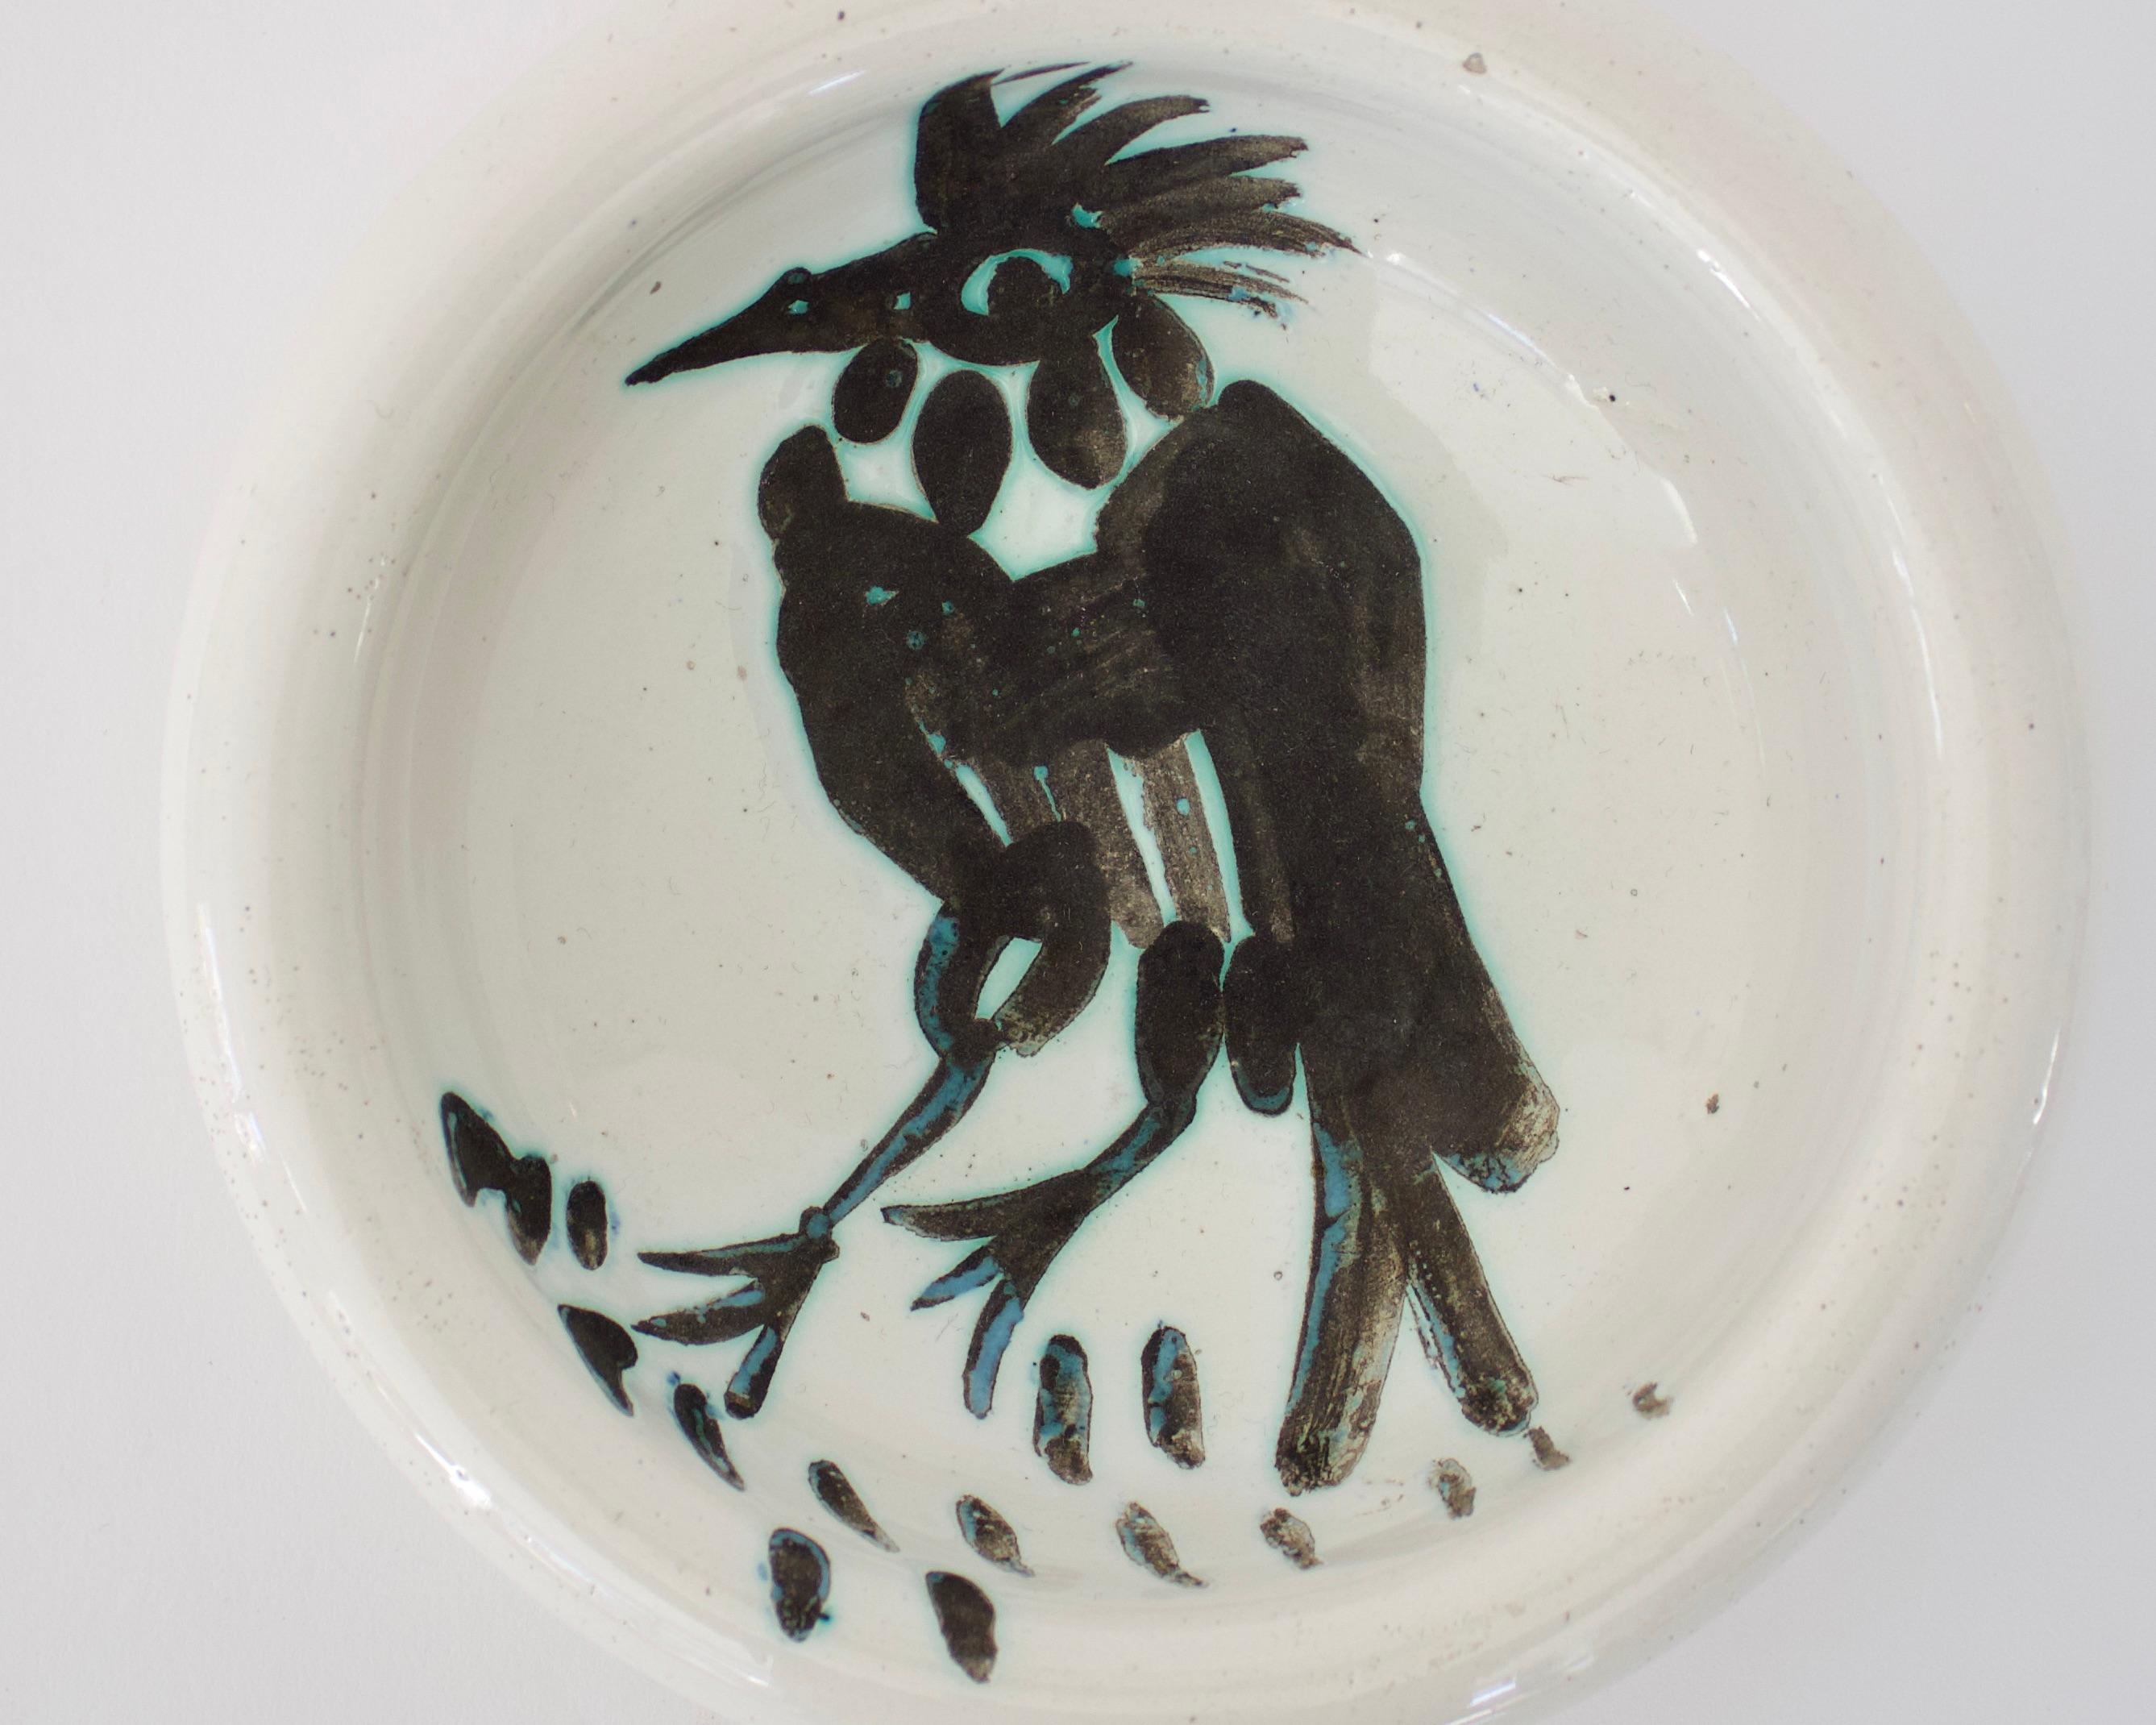 Pablo Picasso Oiseau Schalenvogel mit Büschel und spitzem Schnabel, Editionen Picasso Madoura Frankreich. Circa 1952. 15 handgemalte Pinselstriche unter den Vogelfüßen, die auf Nahrung hinweisen. 
Auf der Unterseite mit Madoura Plein Feu edition